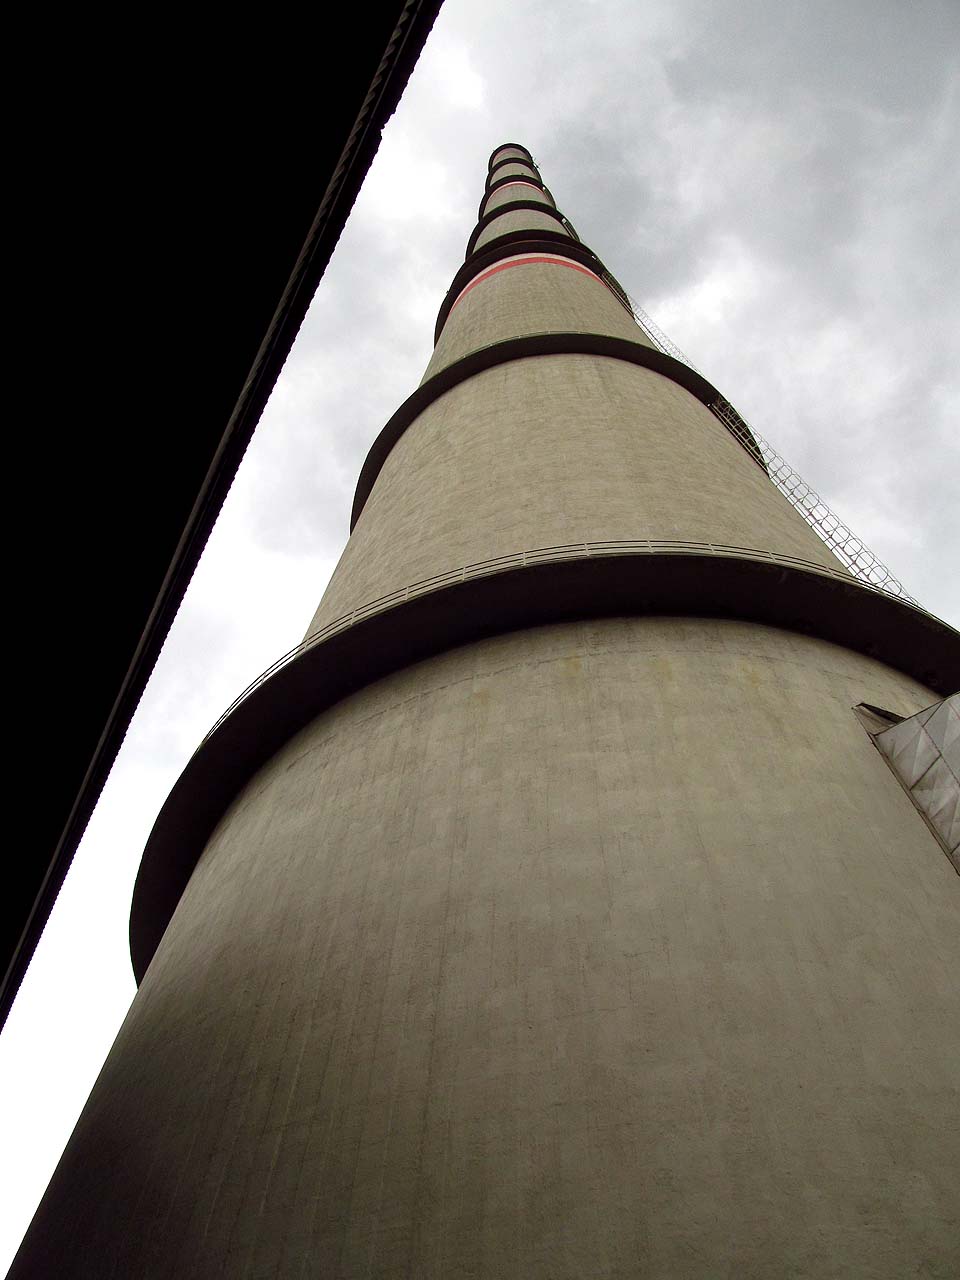 Pokud bude ovšem potřeba pořádný tah, lze kouř poslat „postaru“ do komína. Je vysoký 300 m a drží tak rekord nejvyšší zděné stavby (kromě tří kovových vysílačů) v ČR.